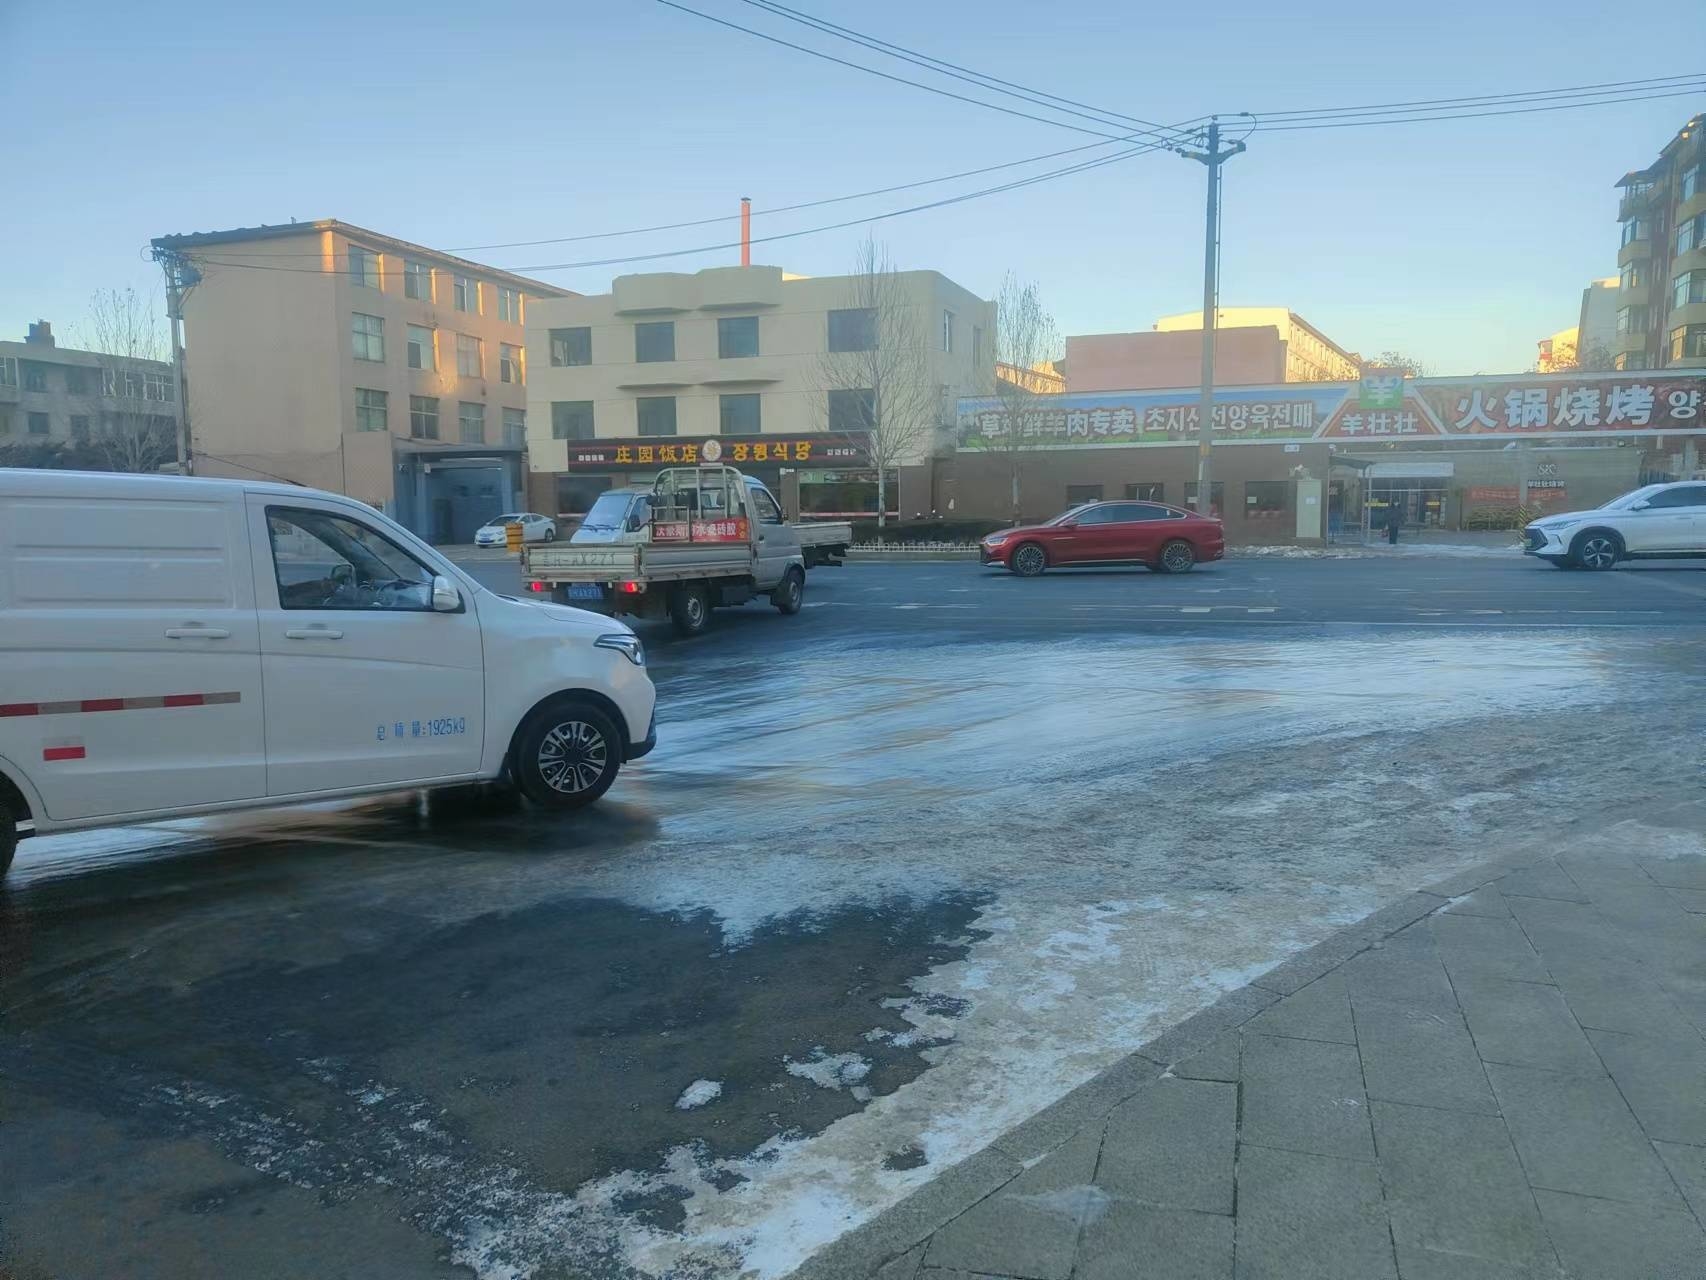 路面结冰有隐患 延吉城管保畅通